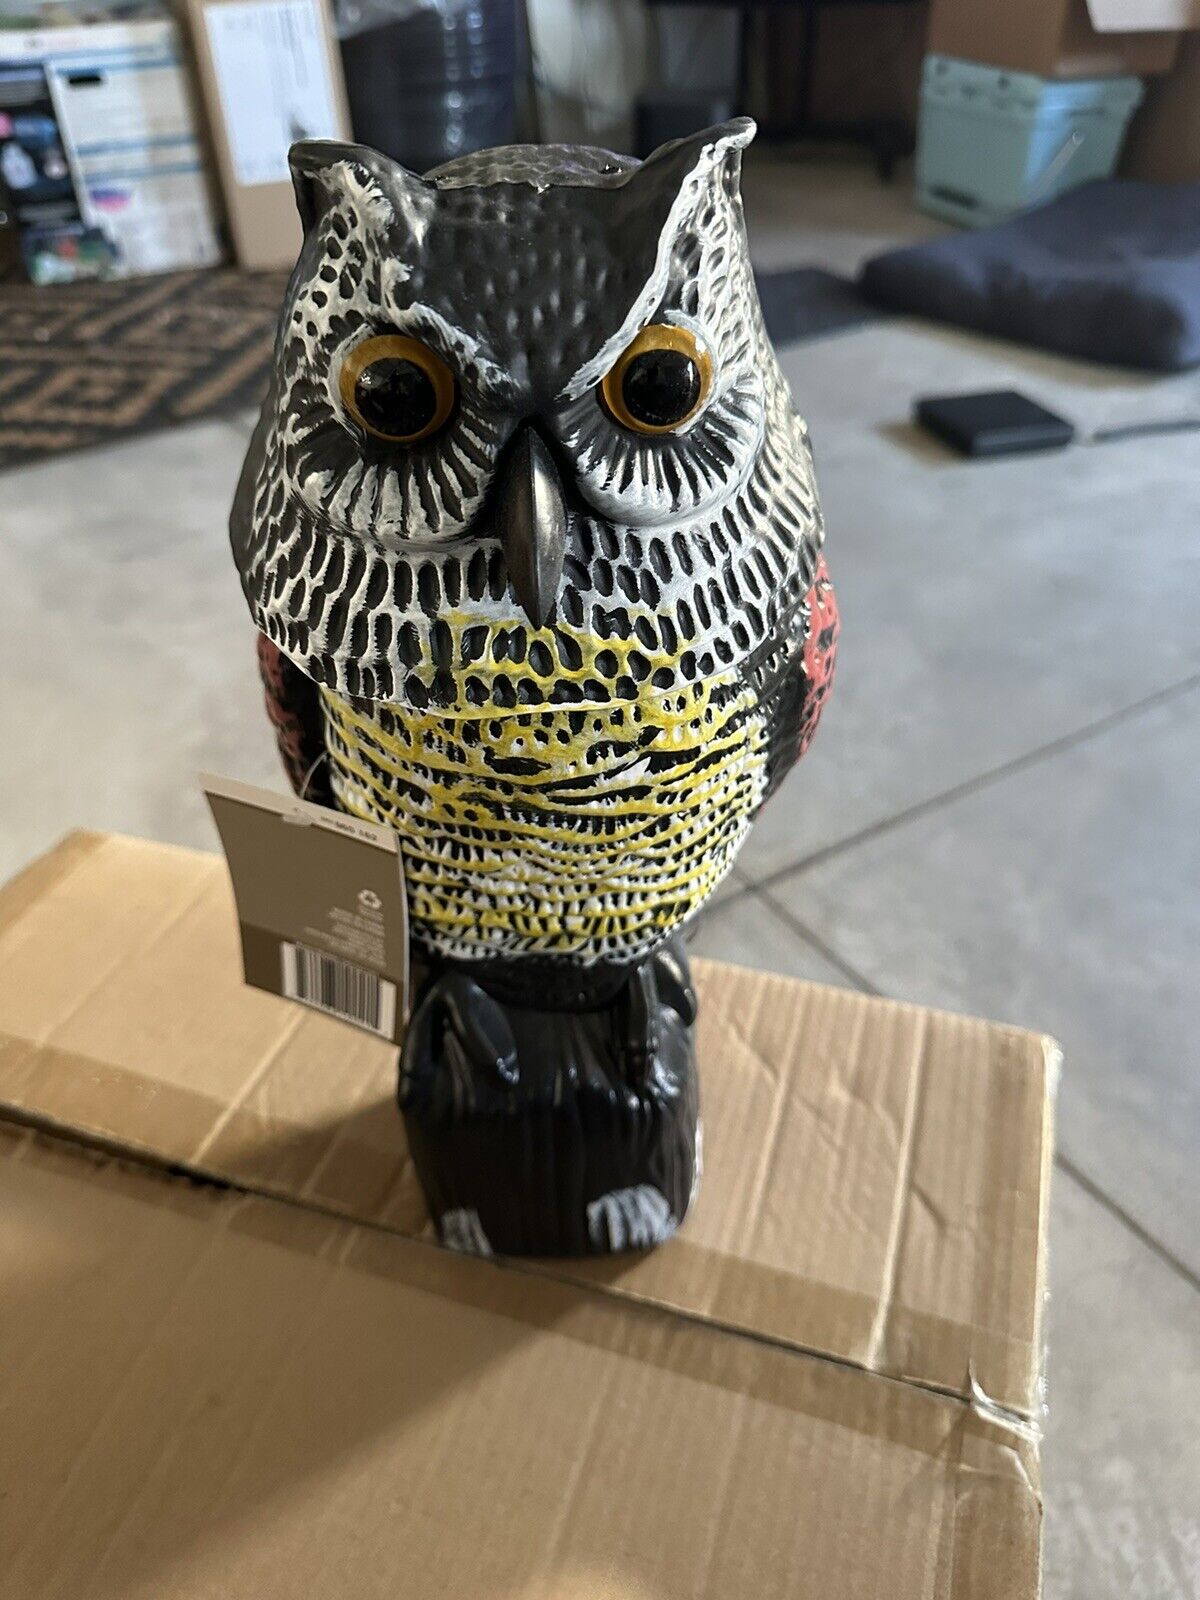 Rotating Head Owl Bird Deterrent - Pest Repellent for Outdoor Garden. Box Of 6